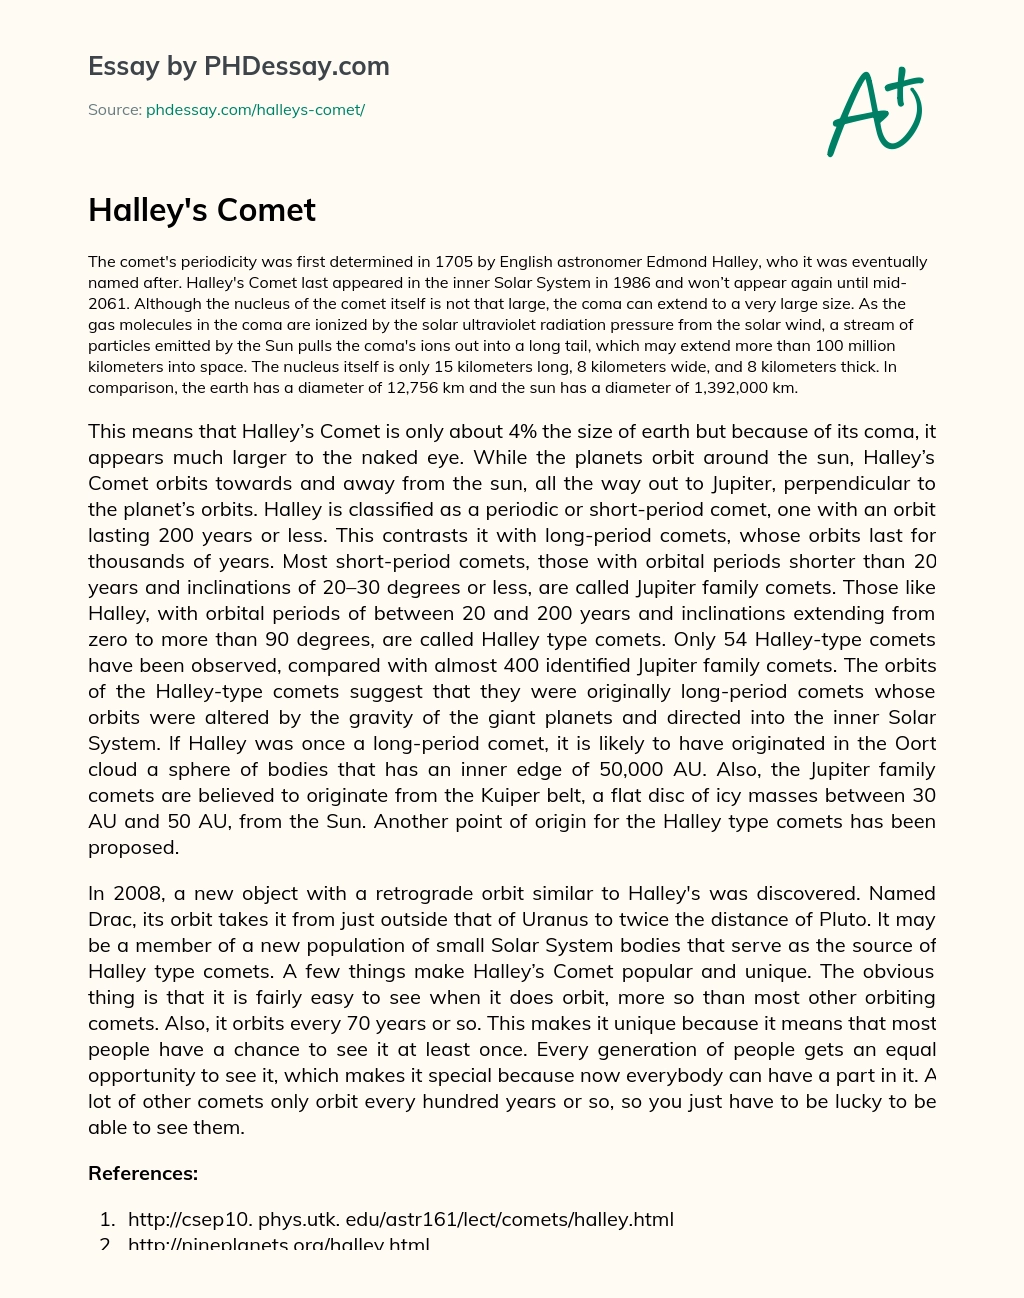 Halley’s Comet essay